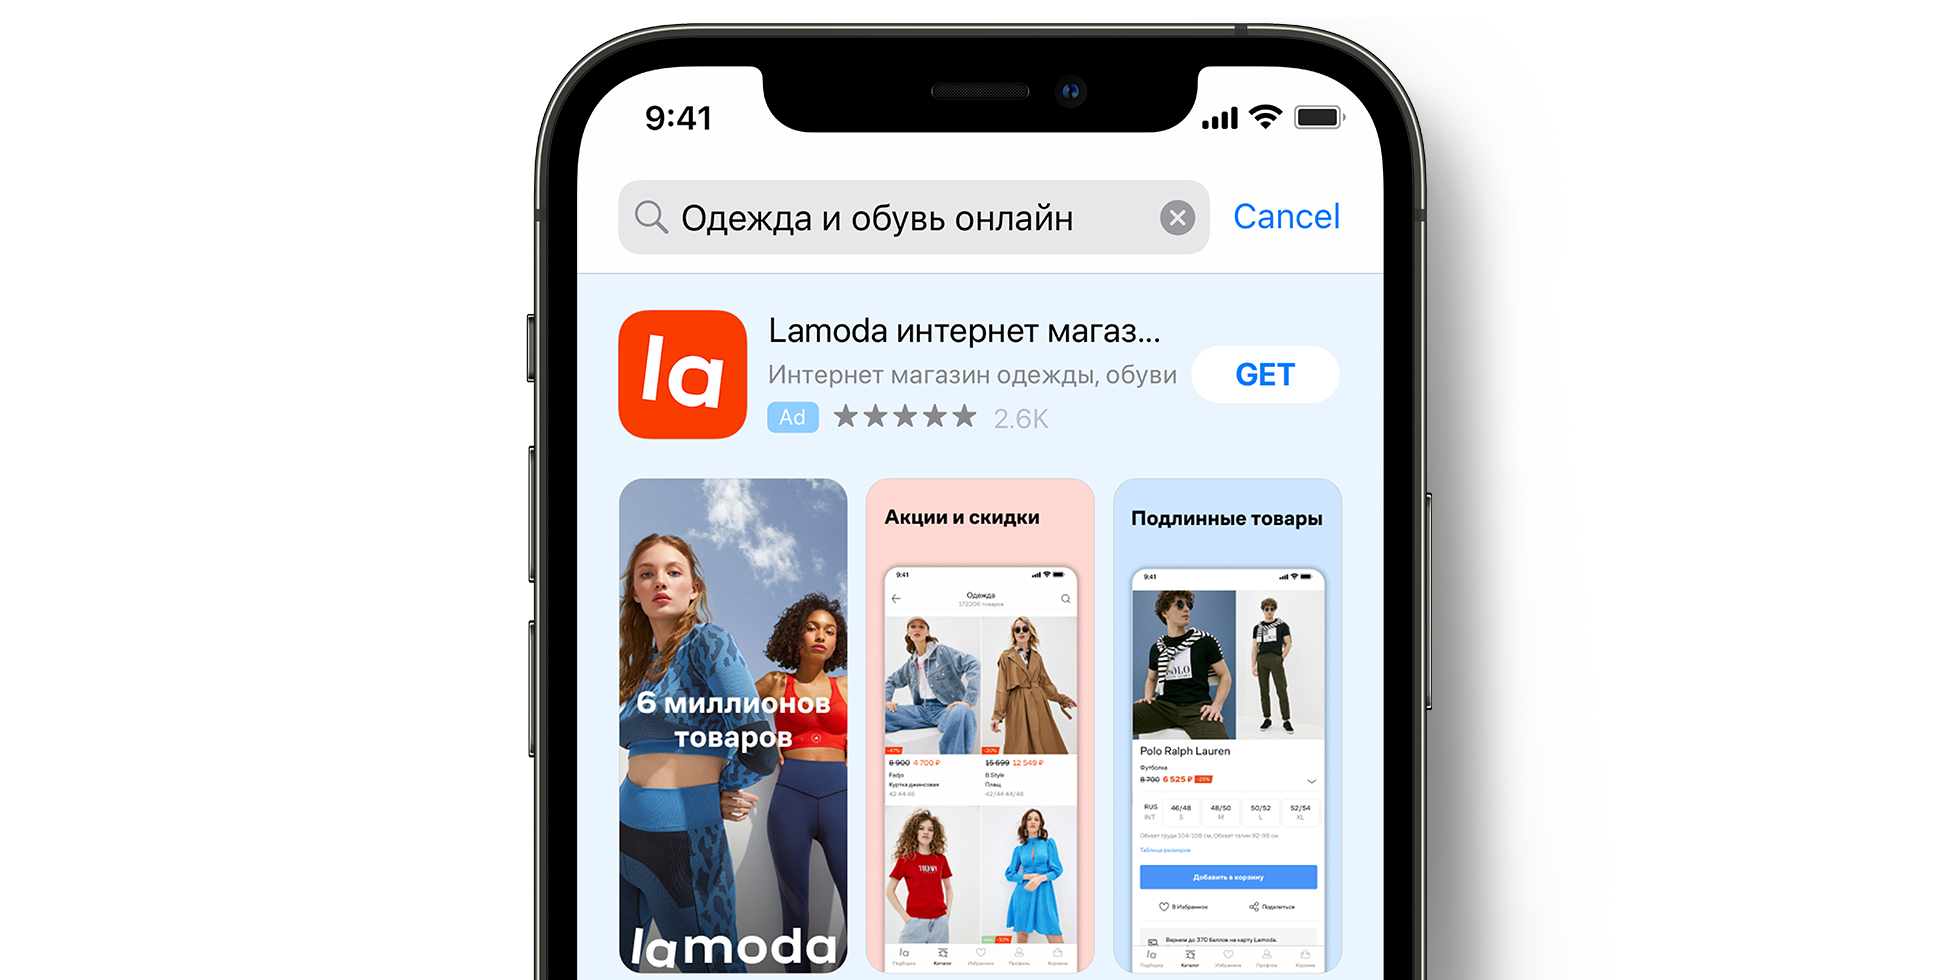 Реклама Lamoda в App Store